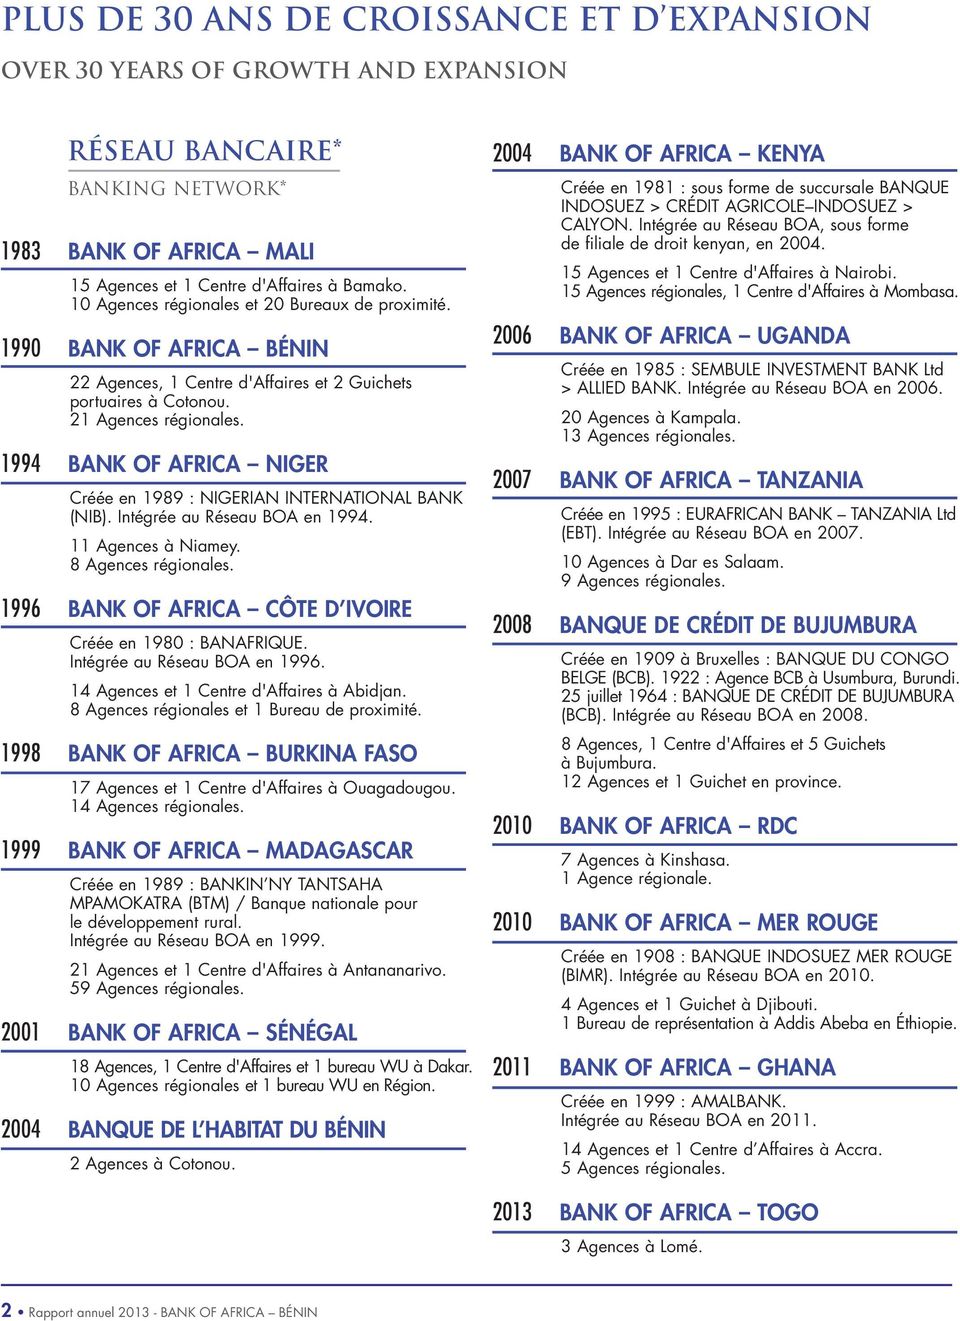 1994 BANK OF AFRICA NIGER Créée en 1989 : NIGERIAN INTERNATIONAL BANK (NIB). Intégrée au Réseau BOA en 1994. 11 Agences à Niamey. 8 Agences régionales.